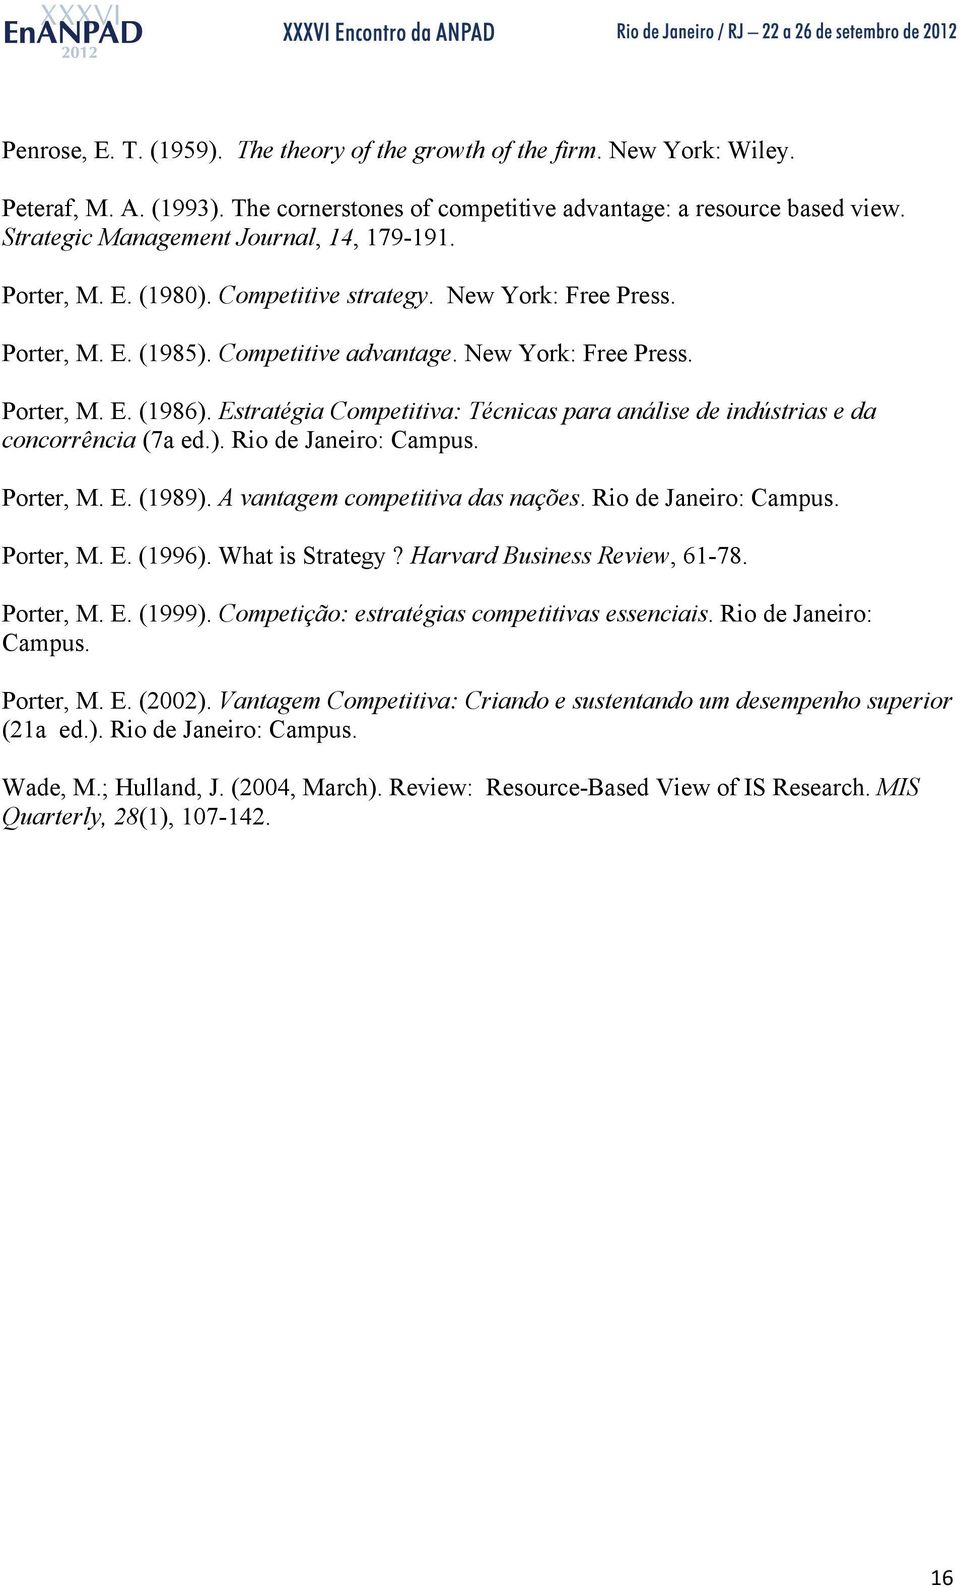 Estratégia Competitiva: Técnicas para análise de indústrias e da concorrência (7a ed.). Rio de Janeiro: Campus. Porter, M. E. (1989). A vantagem competitiva das nações. Rio de Janeiro: Campus. Porter, M. E. (1996).